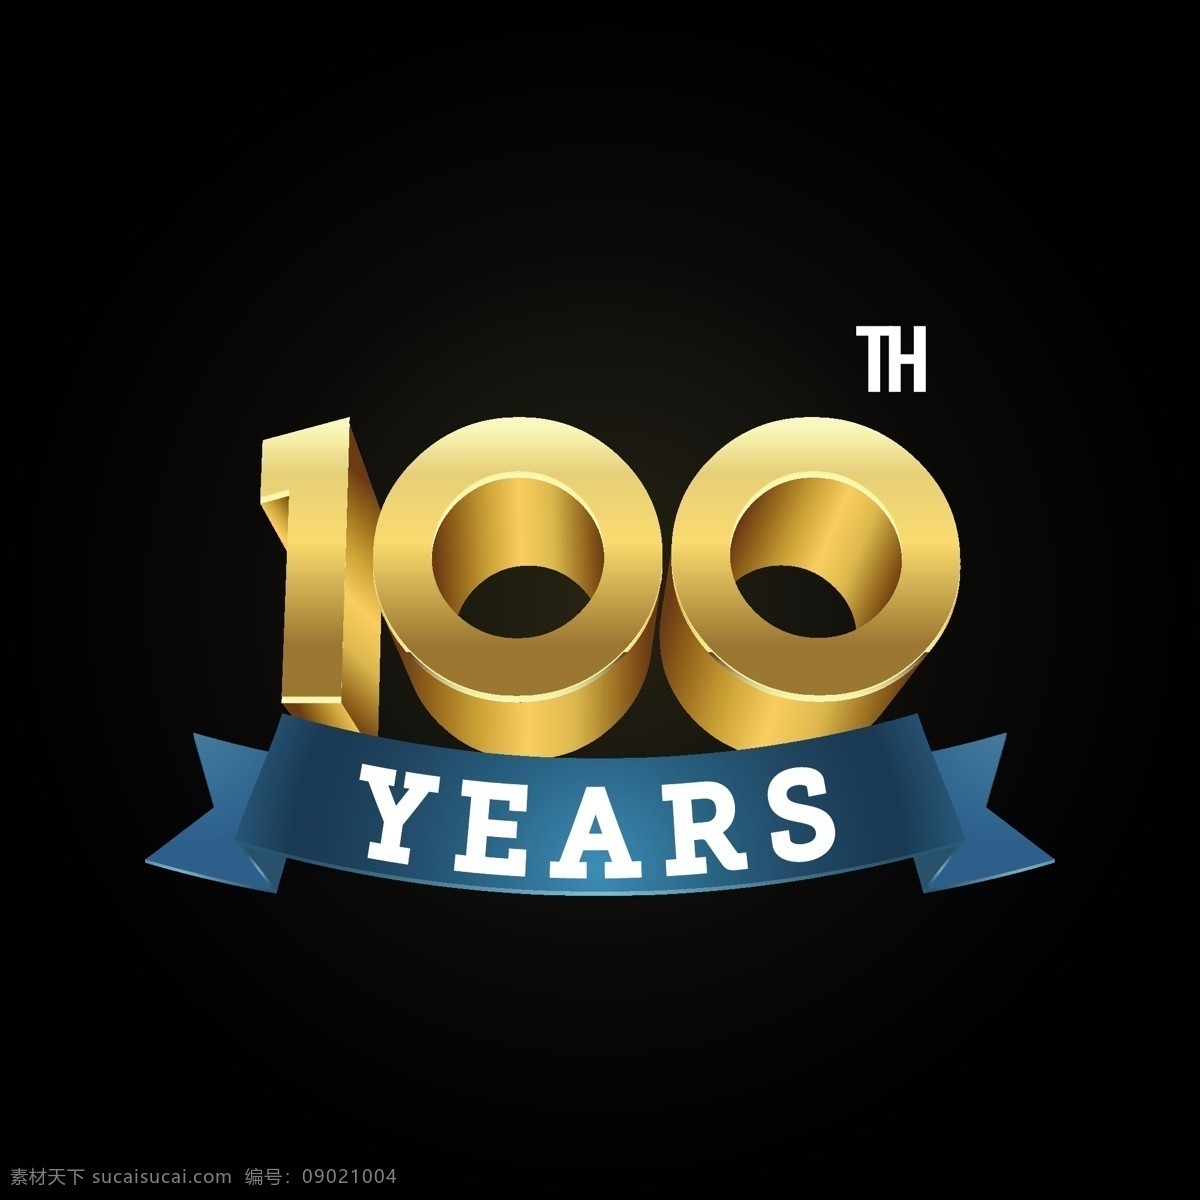 年 黑 背景 生日 周年纪念 壁纸 黑色 庆典 一年 100年 庆祝仪式